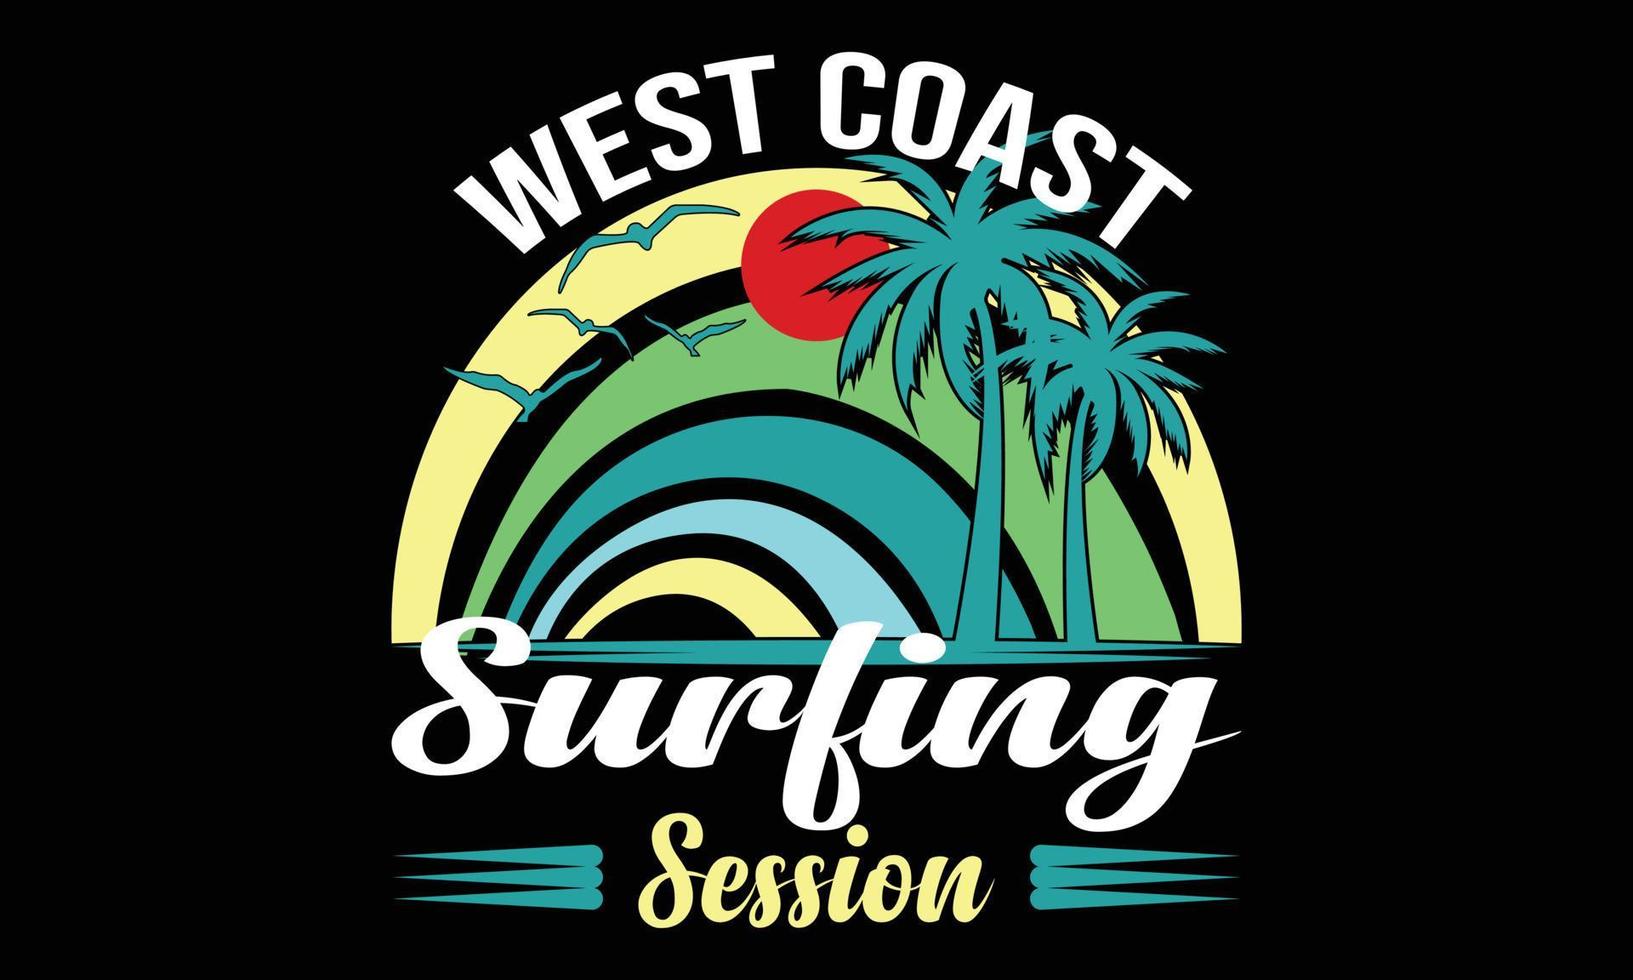 west kust surfing sessie typografie vector illustratie en kleurrijk ontwerp.